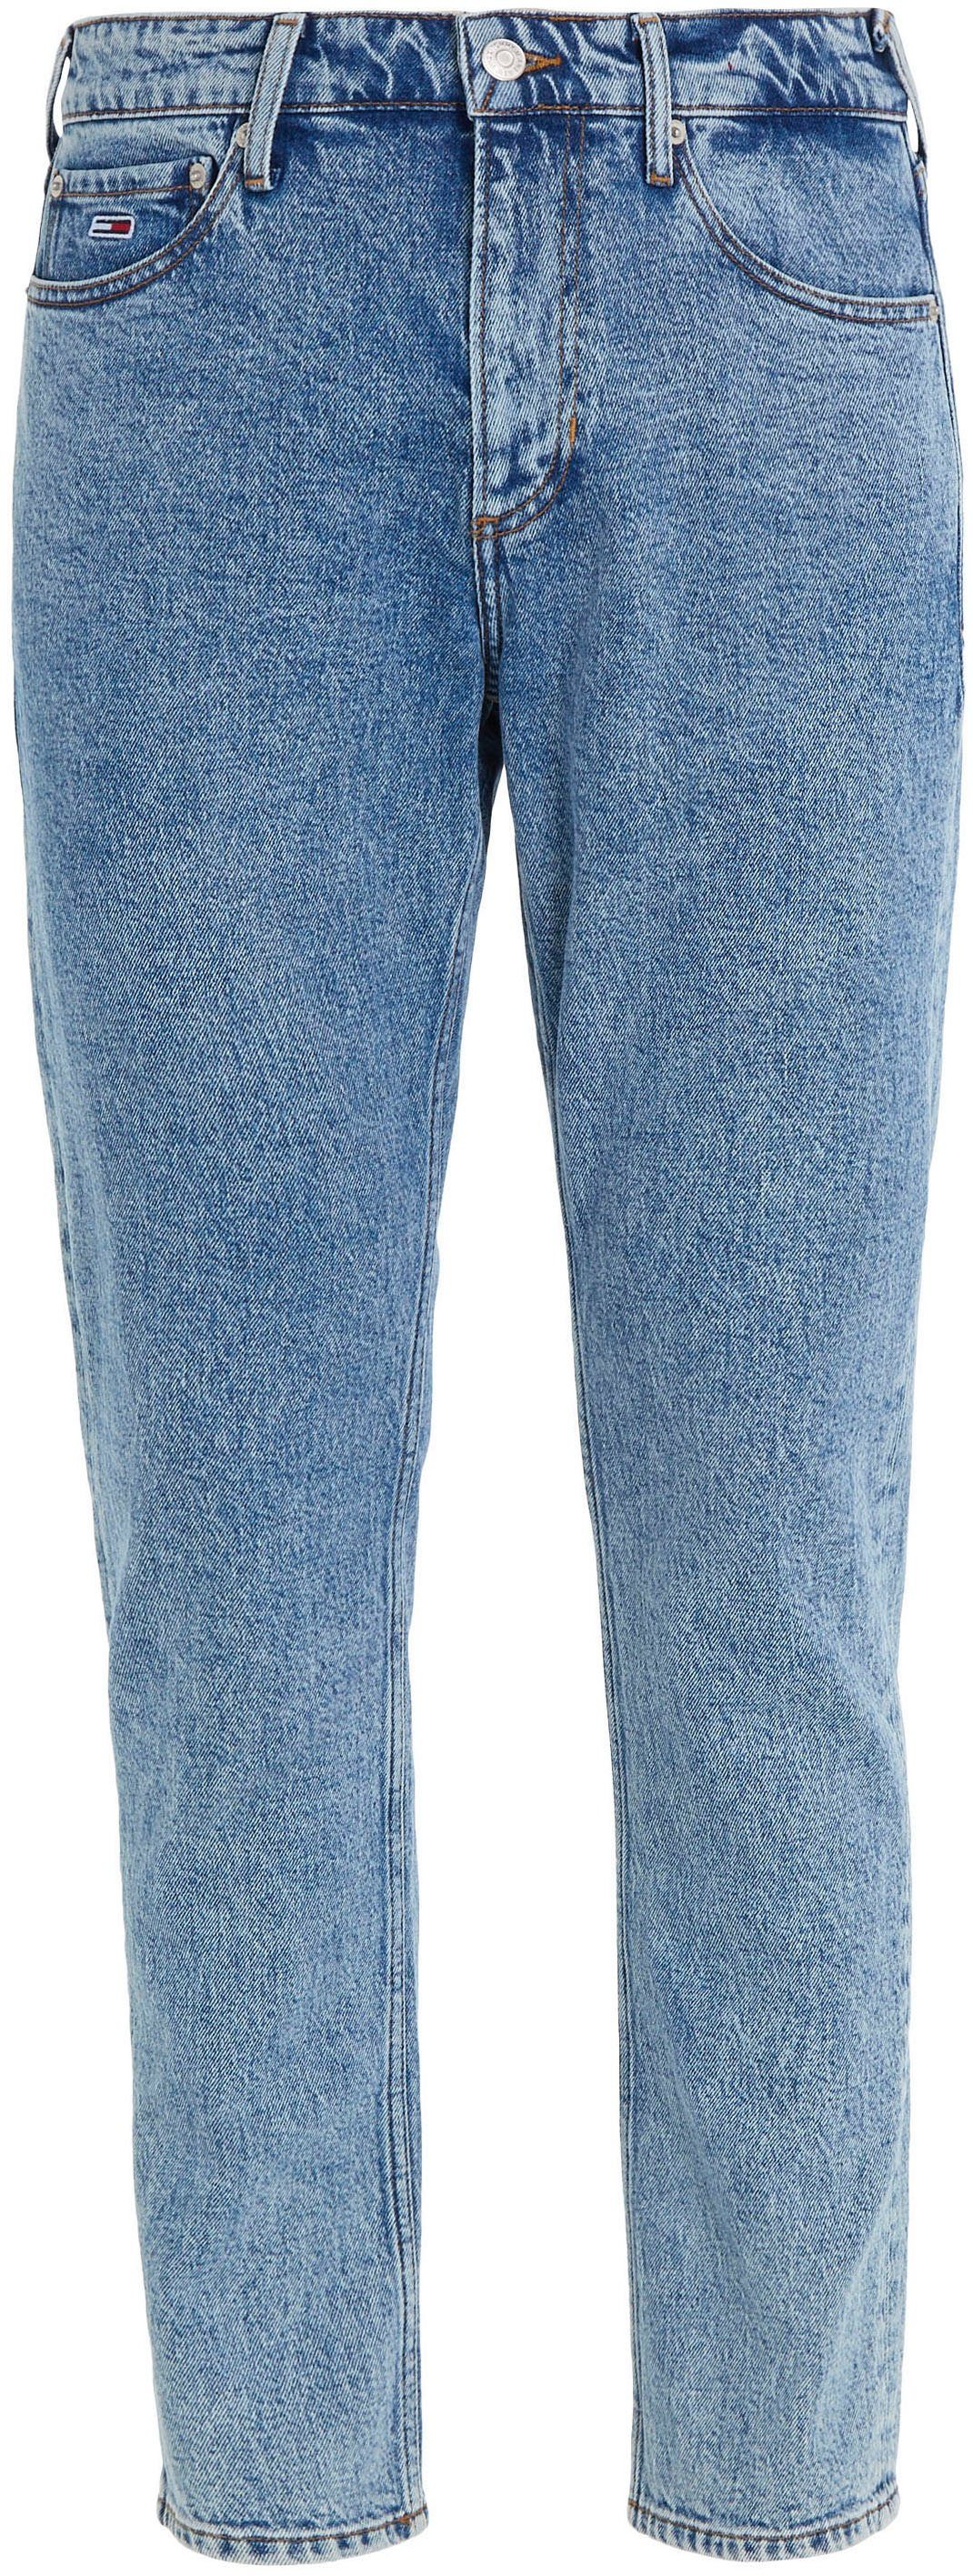 Denim Jeans SCANTON 5-Pocket-Jeans SLIM Tommy med. Y